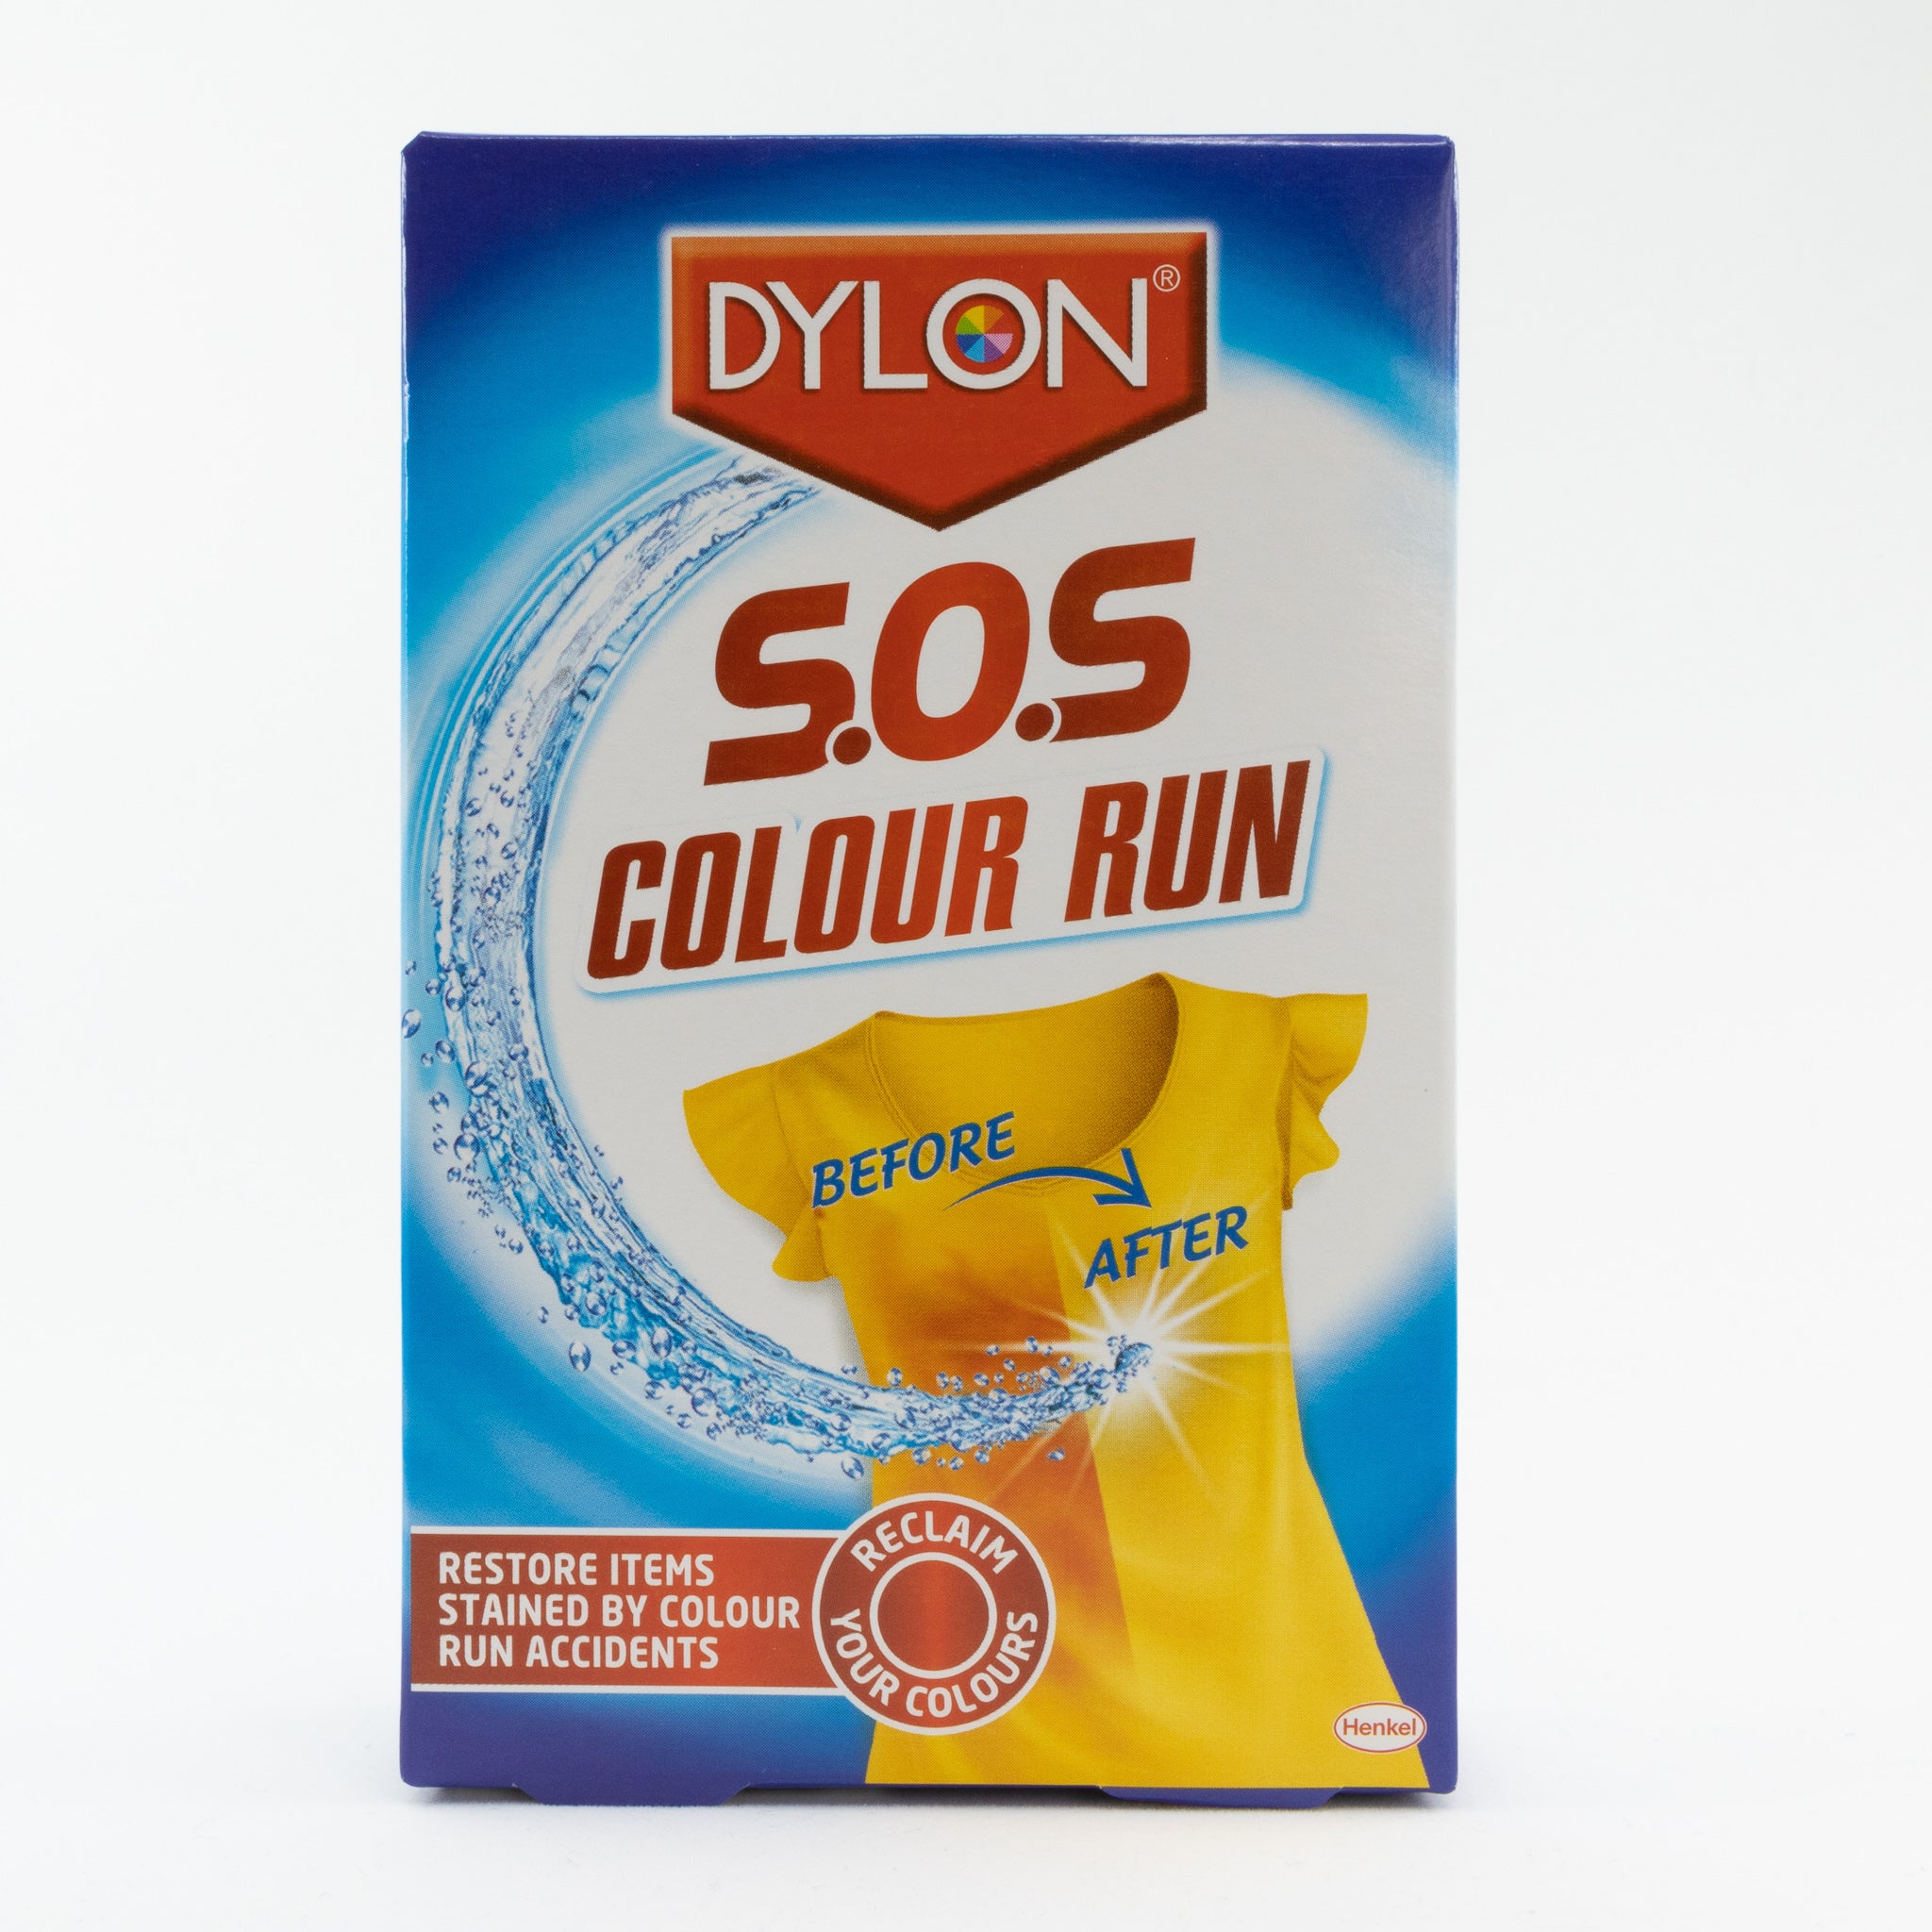 First Look: Dylon SOS Colour Run remover - Consumer NZ